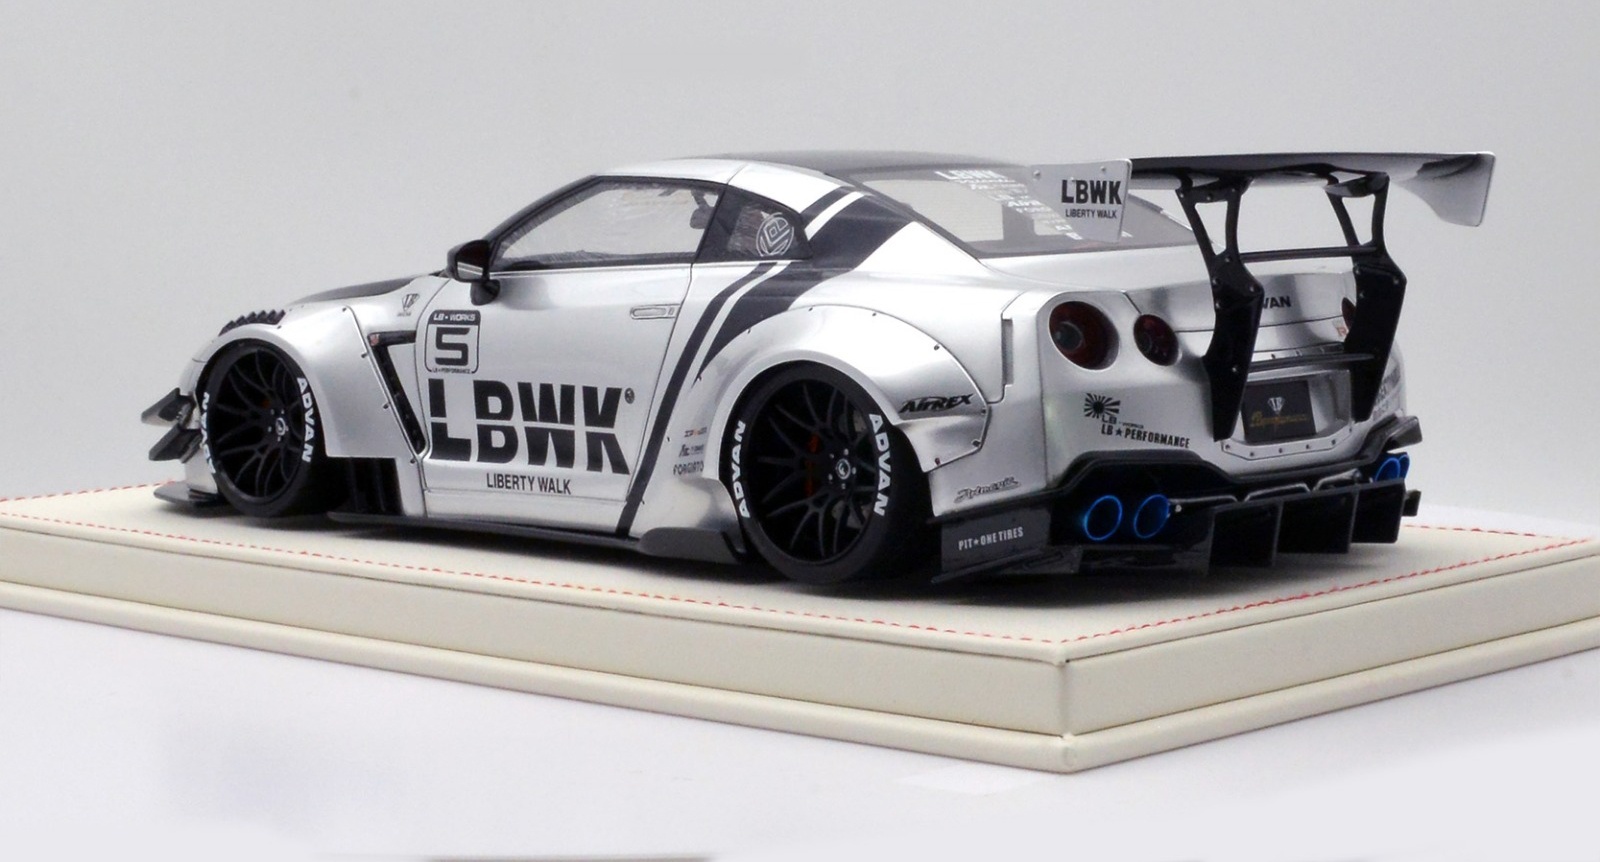 1/18 LB-Works Nissan GT-R R35 V2.0 LBWK Silver